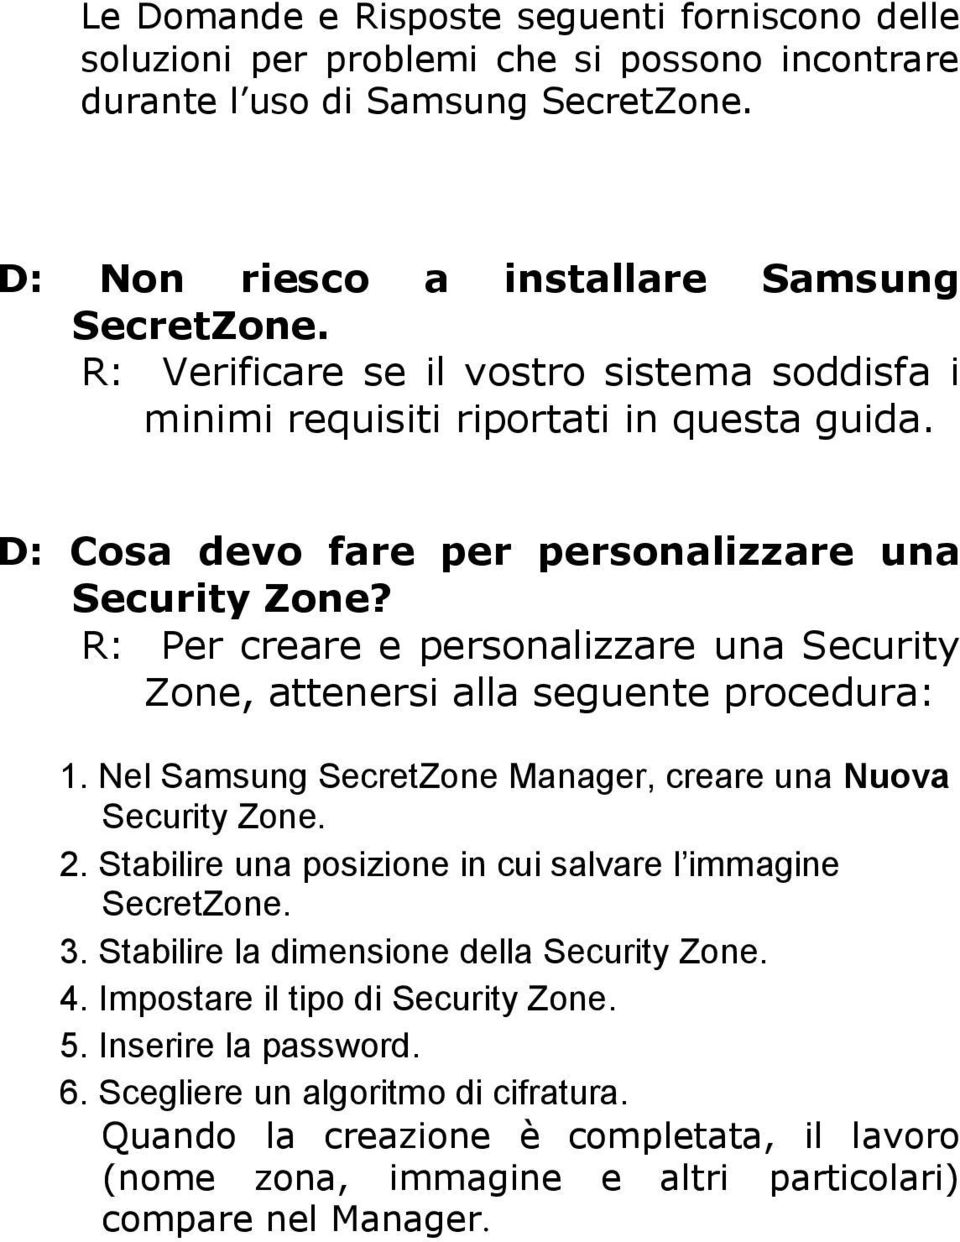 R: Per creare e personalizzare una Security Zone, attenersi alla seguente procedura: 1. Nel Samsung SecretZone Manager, creare una Nuova Security Zone. 2.